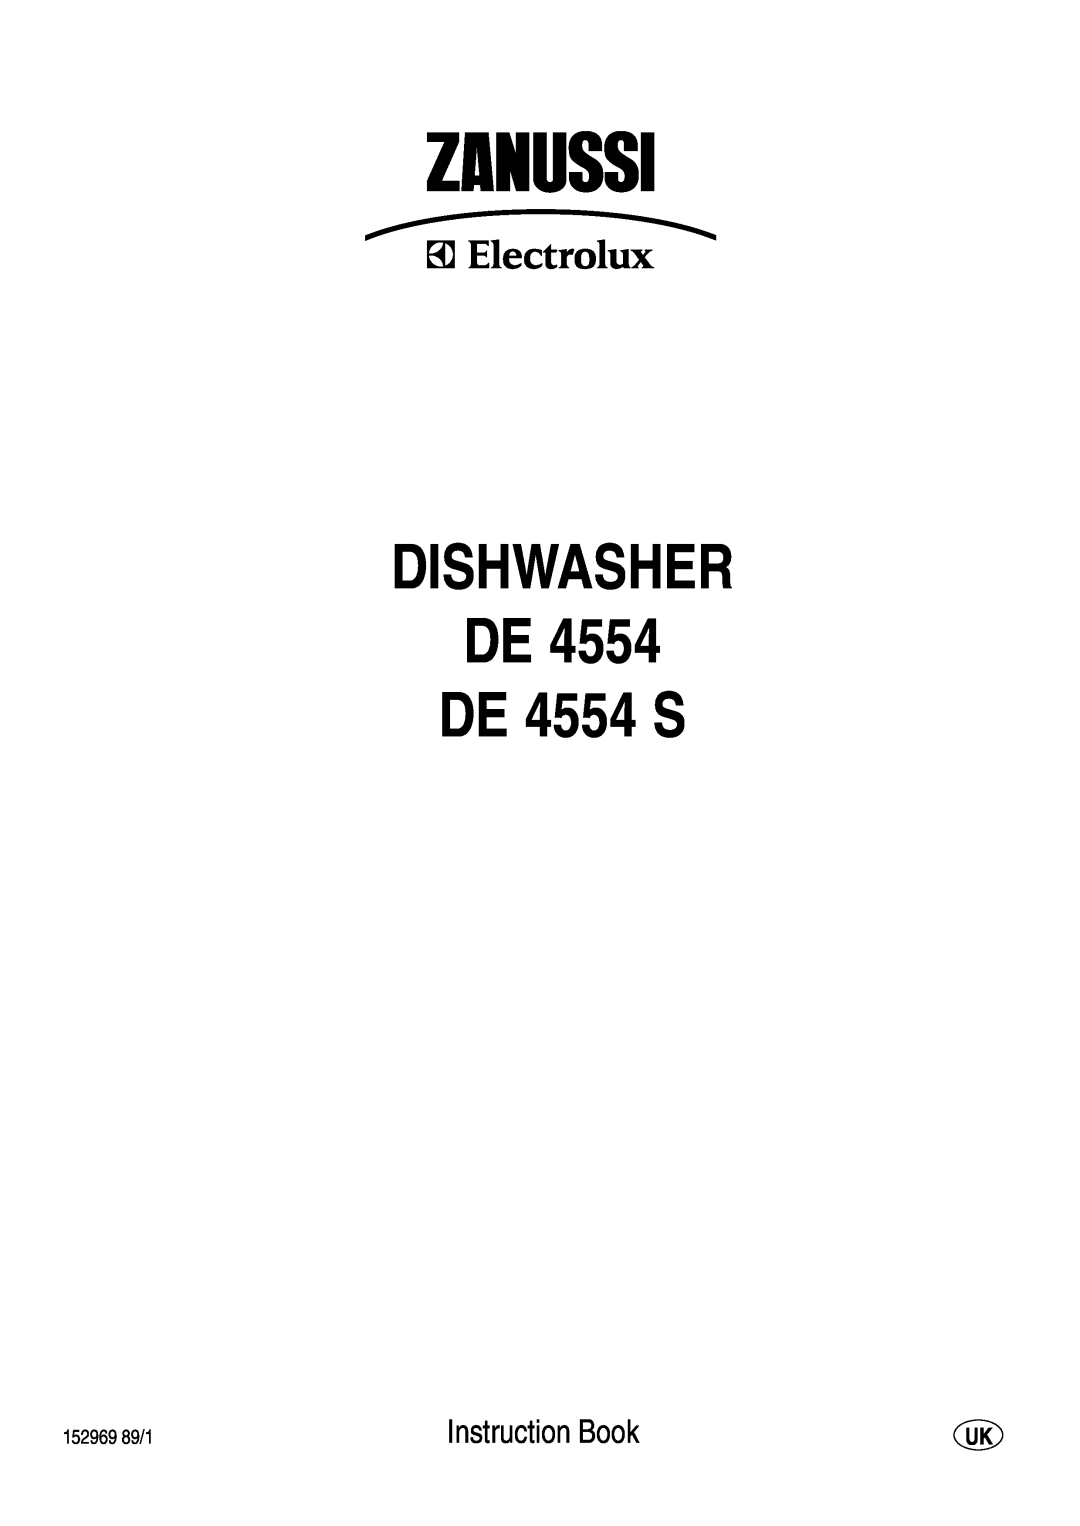 Zanussi manual DISHWASHER DE DE 4554 S, Instruction Book 